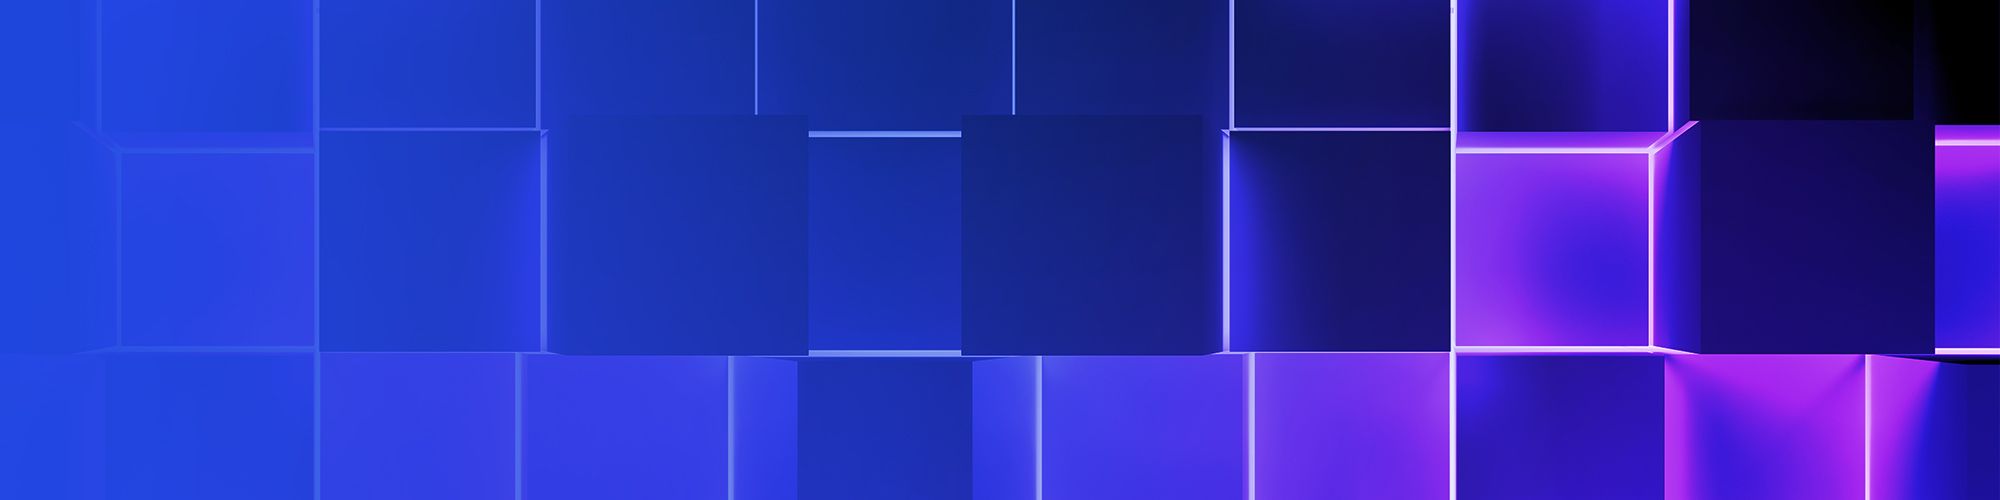 Blue purple cubes